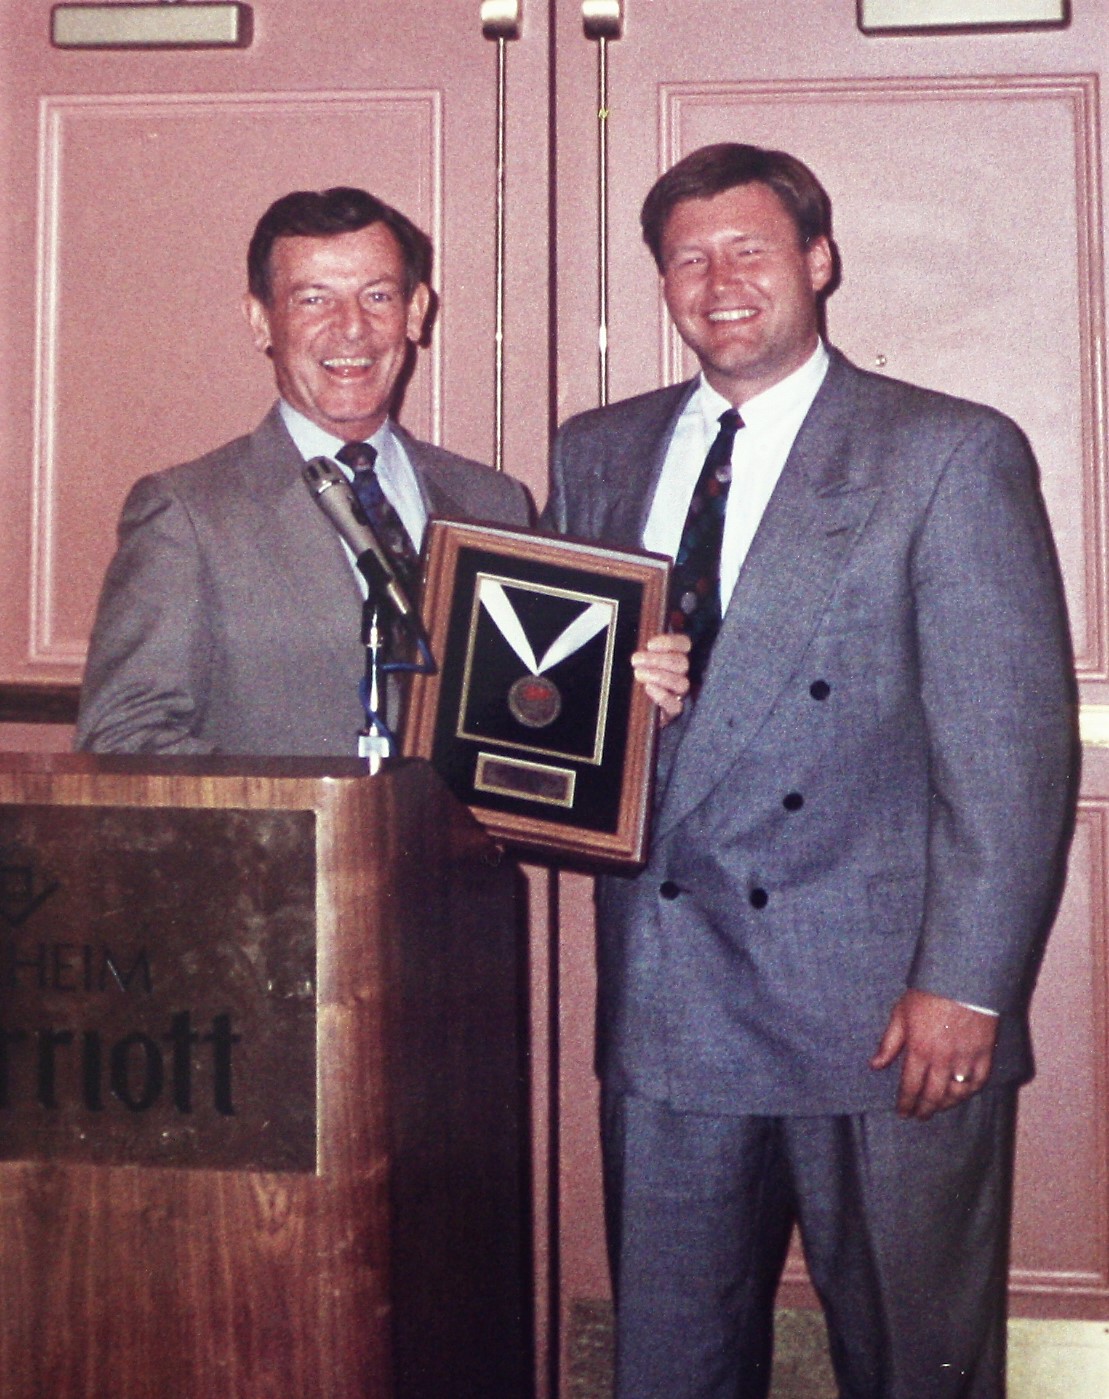 Robert Award 